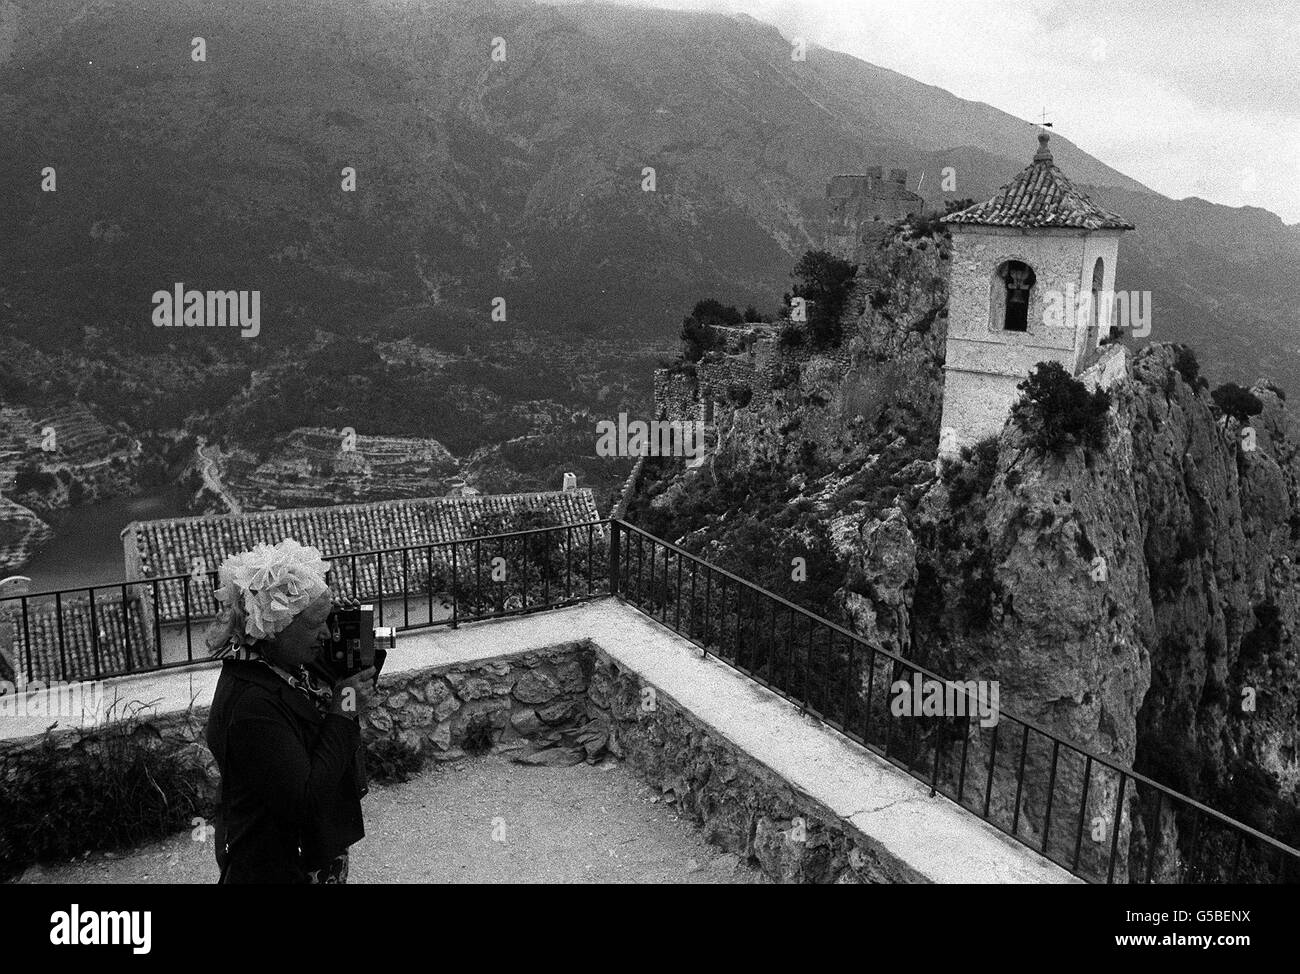 Das kleine Dorf Guadalest, das hoch in den Bergen thront, ist ein beliebtes Motiv für Touristen, die mit der Kamera unterwegs sind. Dieser Tourist ist einer der Tausende, die jedes Jahr den Gipfel mit einem Esel erreichen müssen, um den Kirchturm auf einem der vielen Gipfel zu fotografieren. Stockfoto